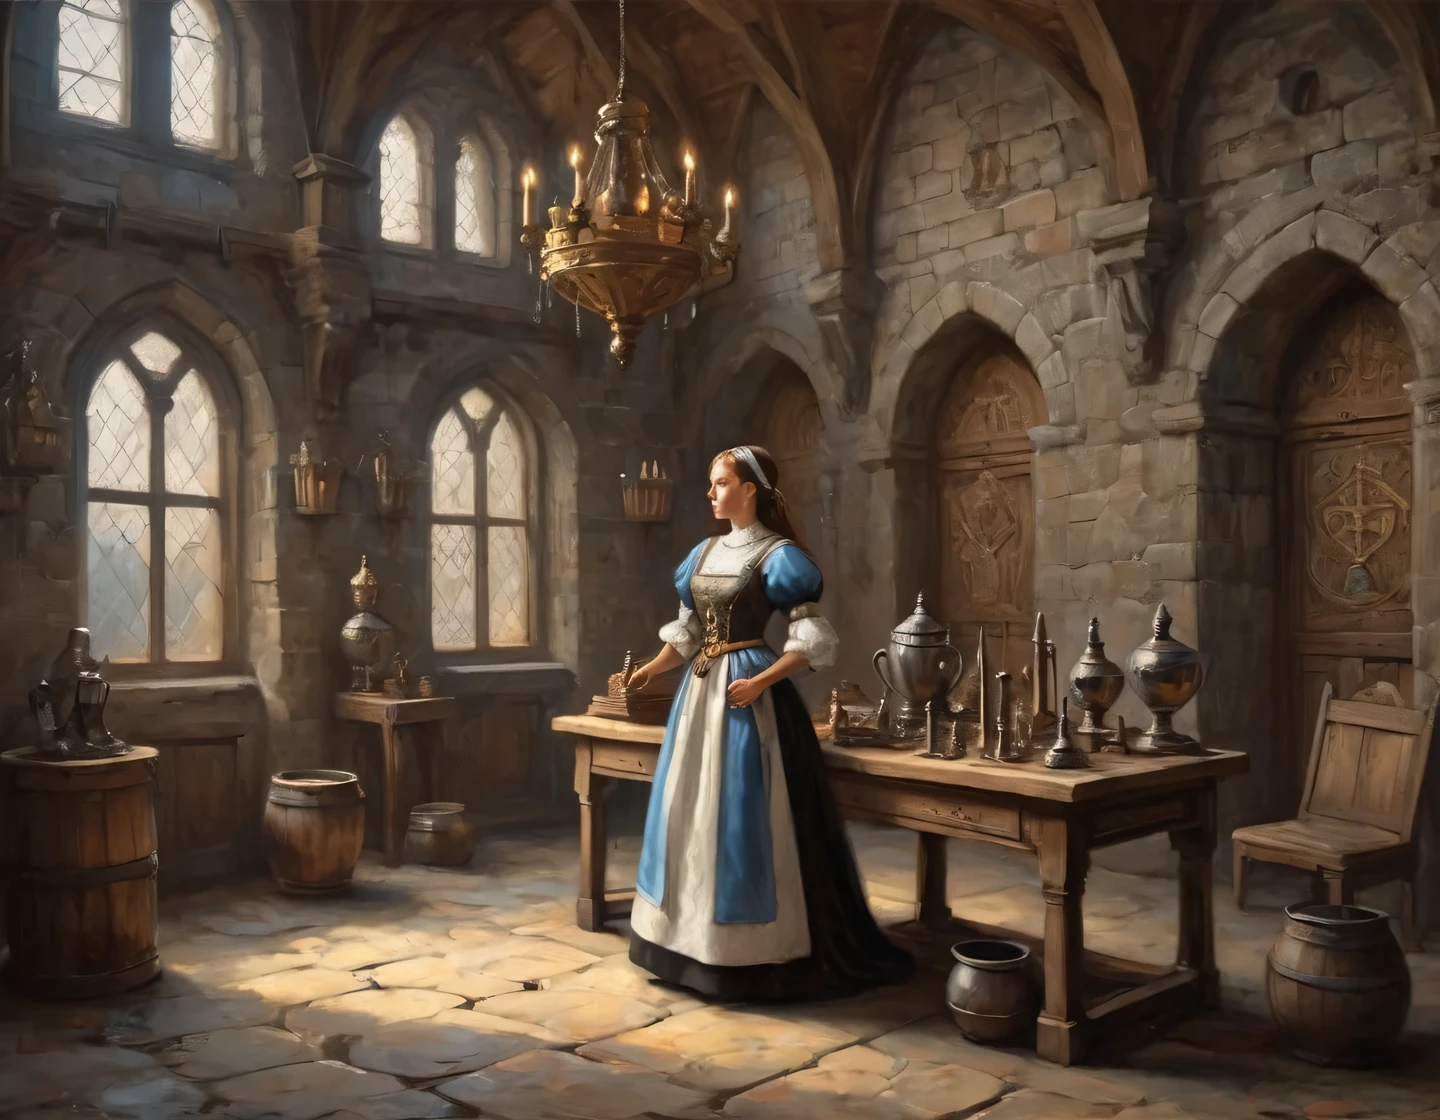 一張古老的照片, 一個穿著女僕裝的機器人女孩正在一座中世紀城堡的大廳裡建造, 中世紀家具, 牆上掛滿了獎盃和武器, 紋章, 實際的